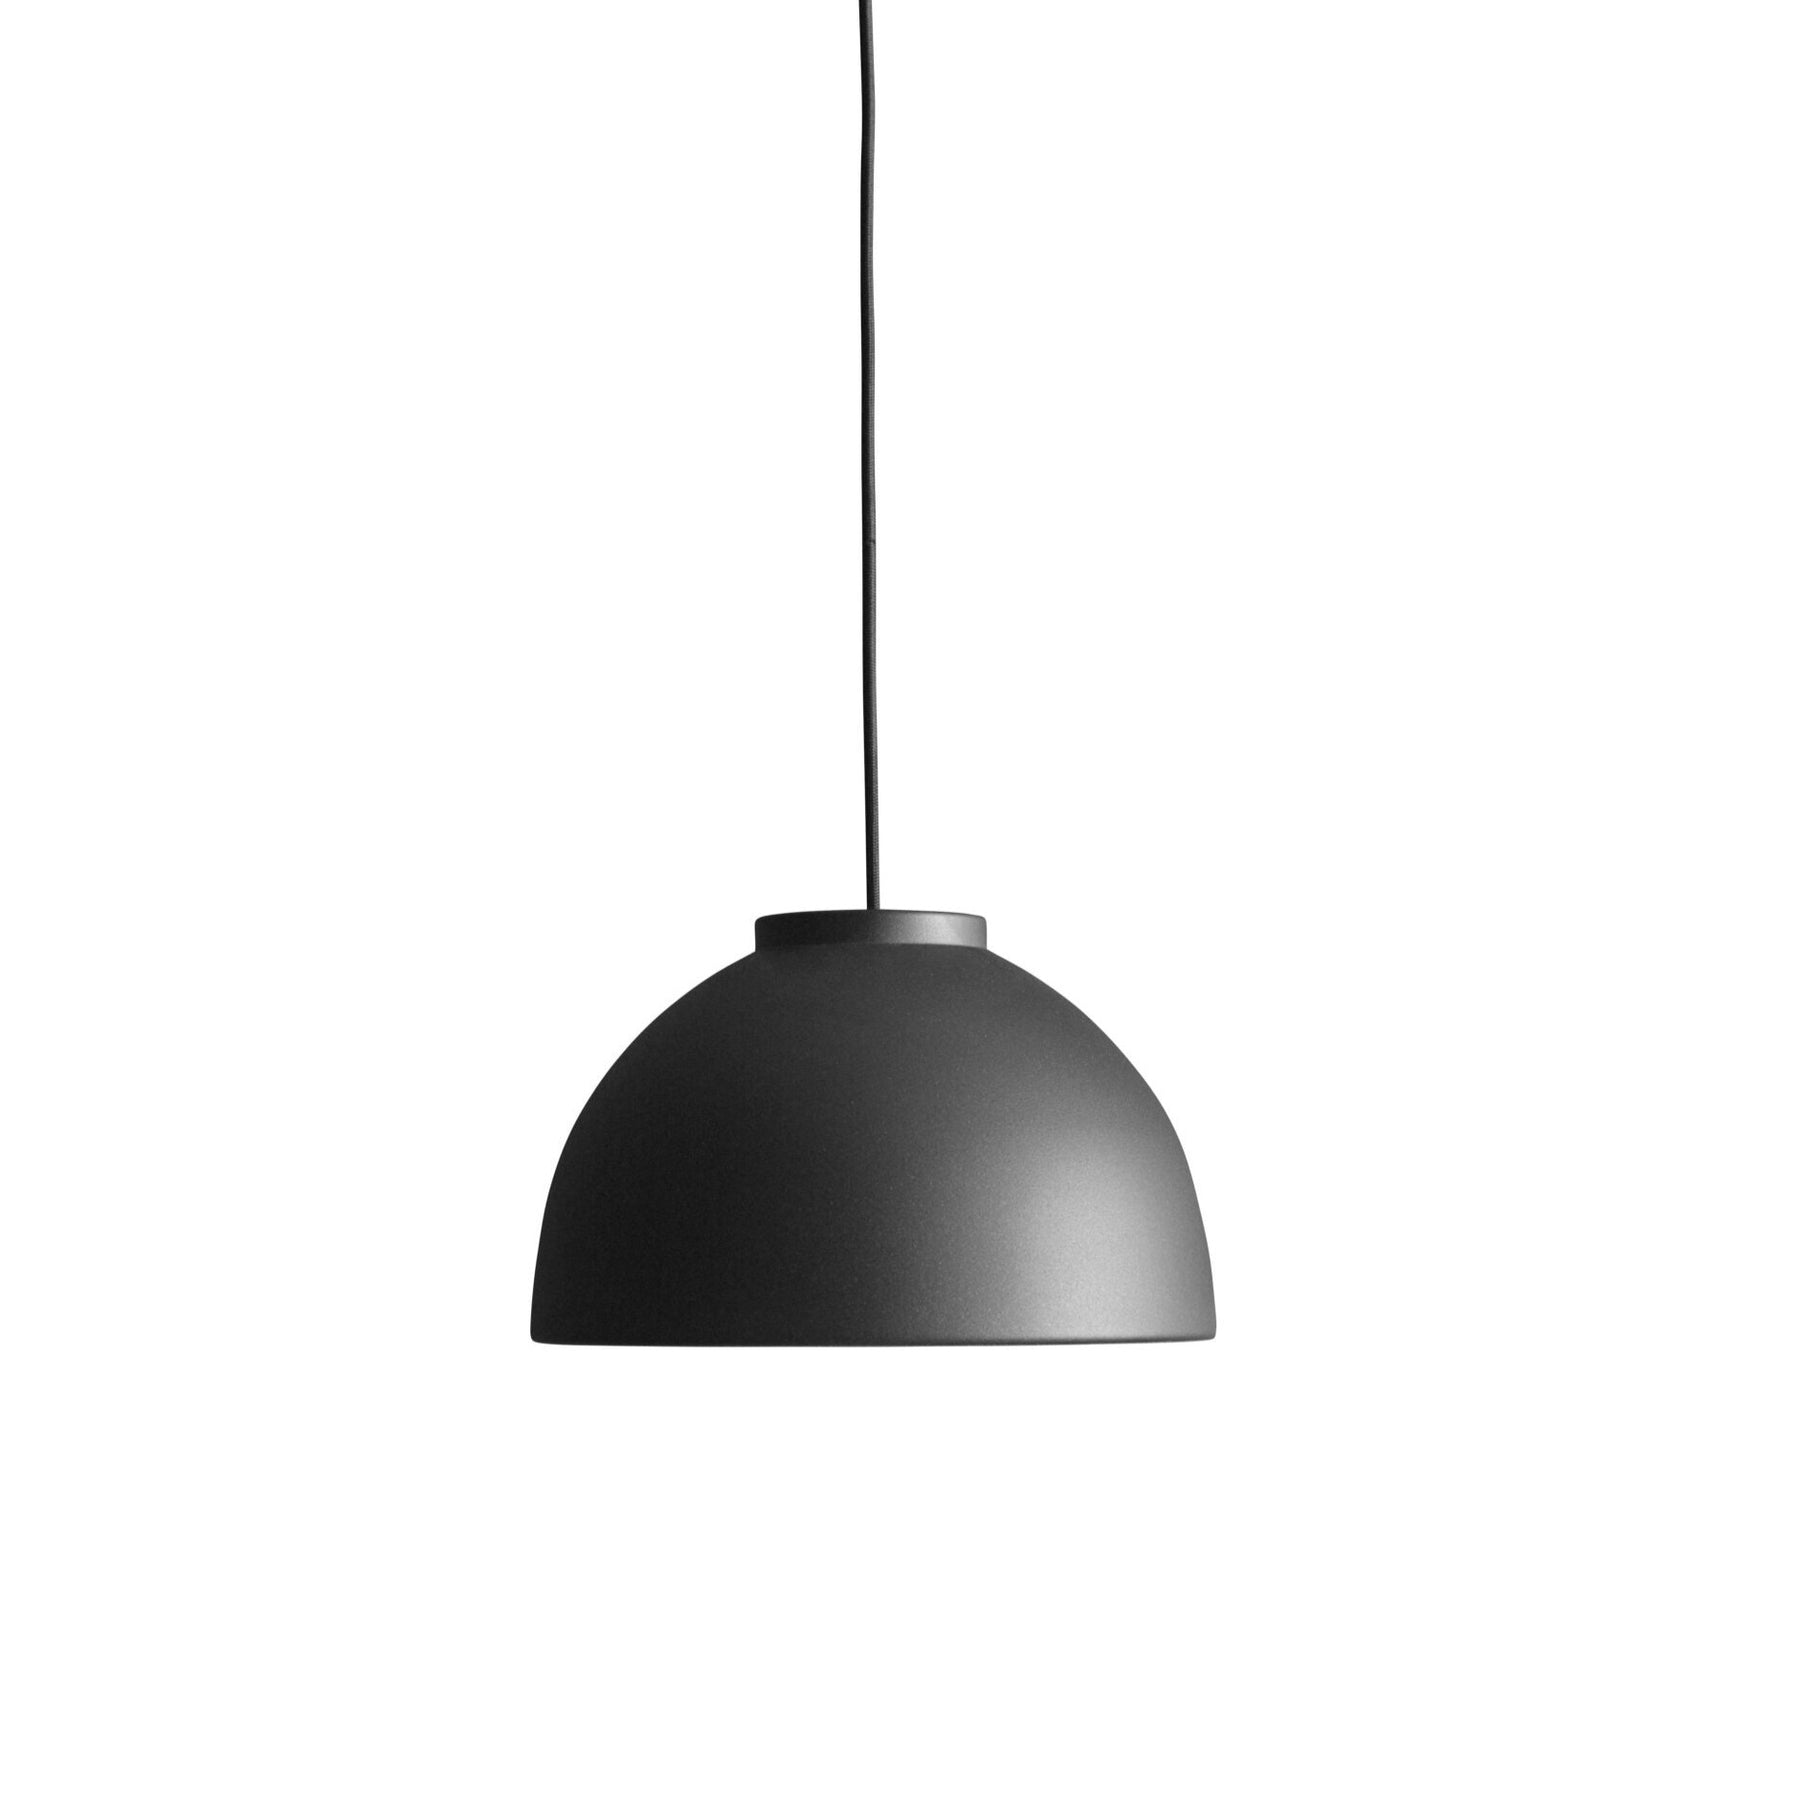 Made by Hand, Copenhagen Pendant Lamp Dark Black, Pendant, Jens Christian-Jenson,